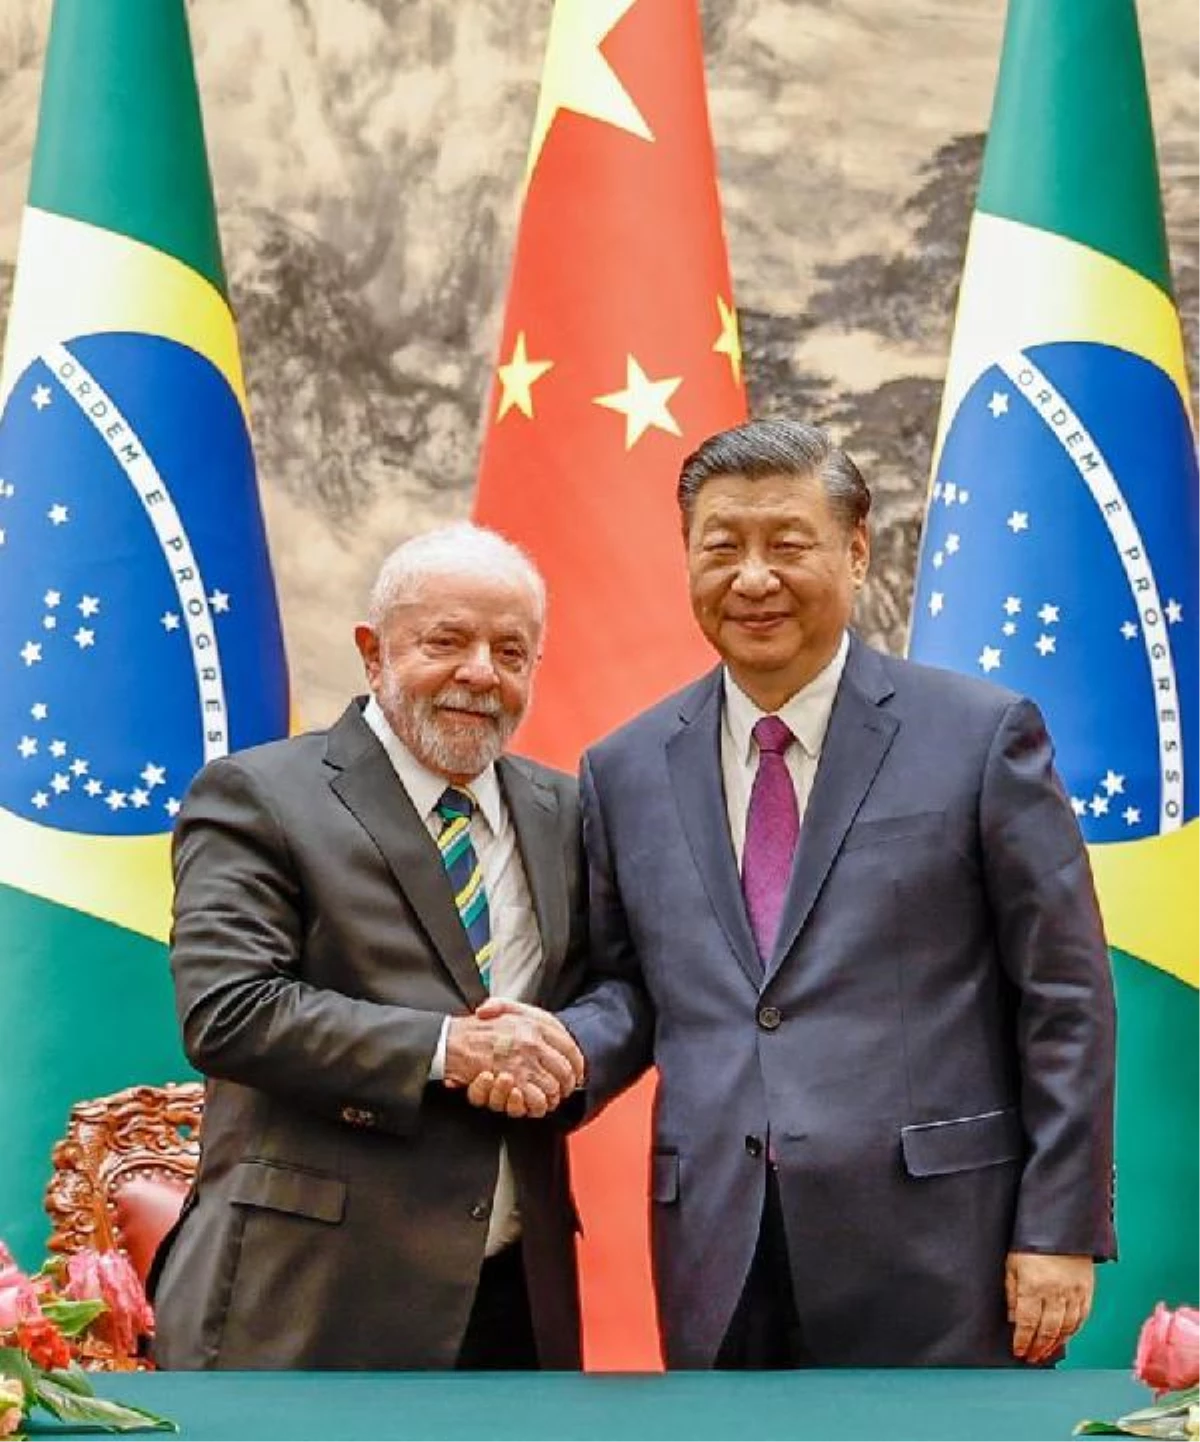 Brezilya Devlet Başkanı Lula: ABD, savaşı teşvik etmeyi bırakmalı